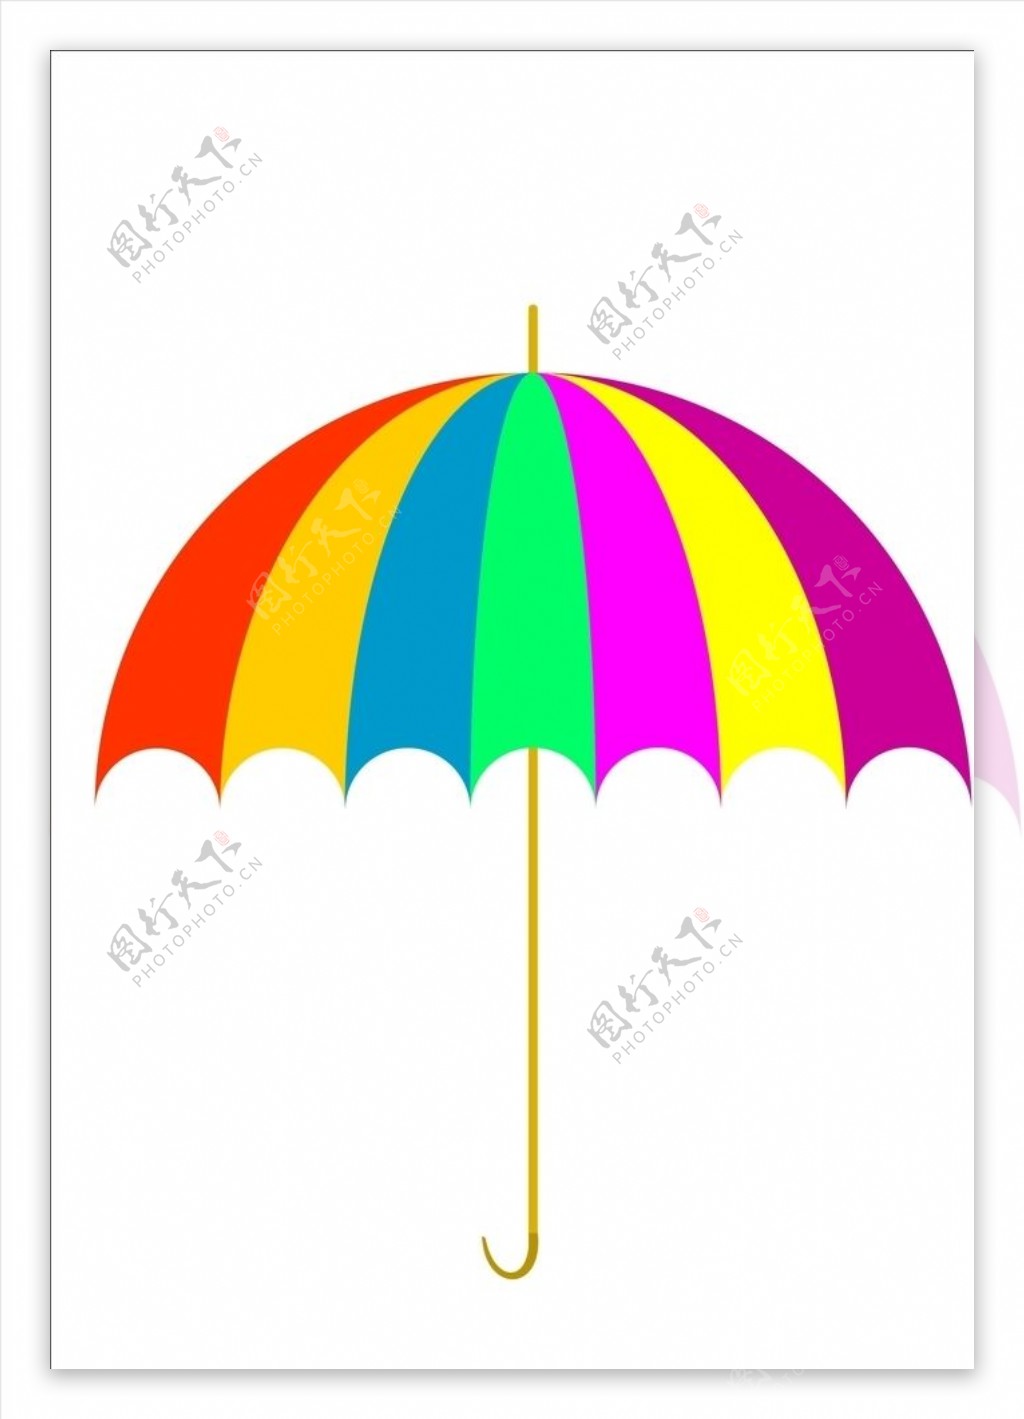 立体小雨伞红橙黄绿青蓝紫矢量图